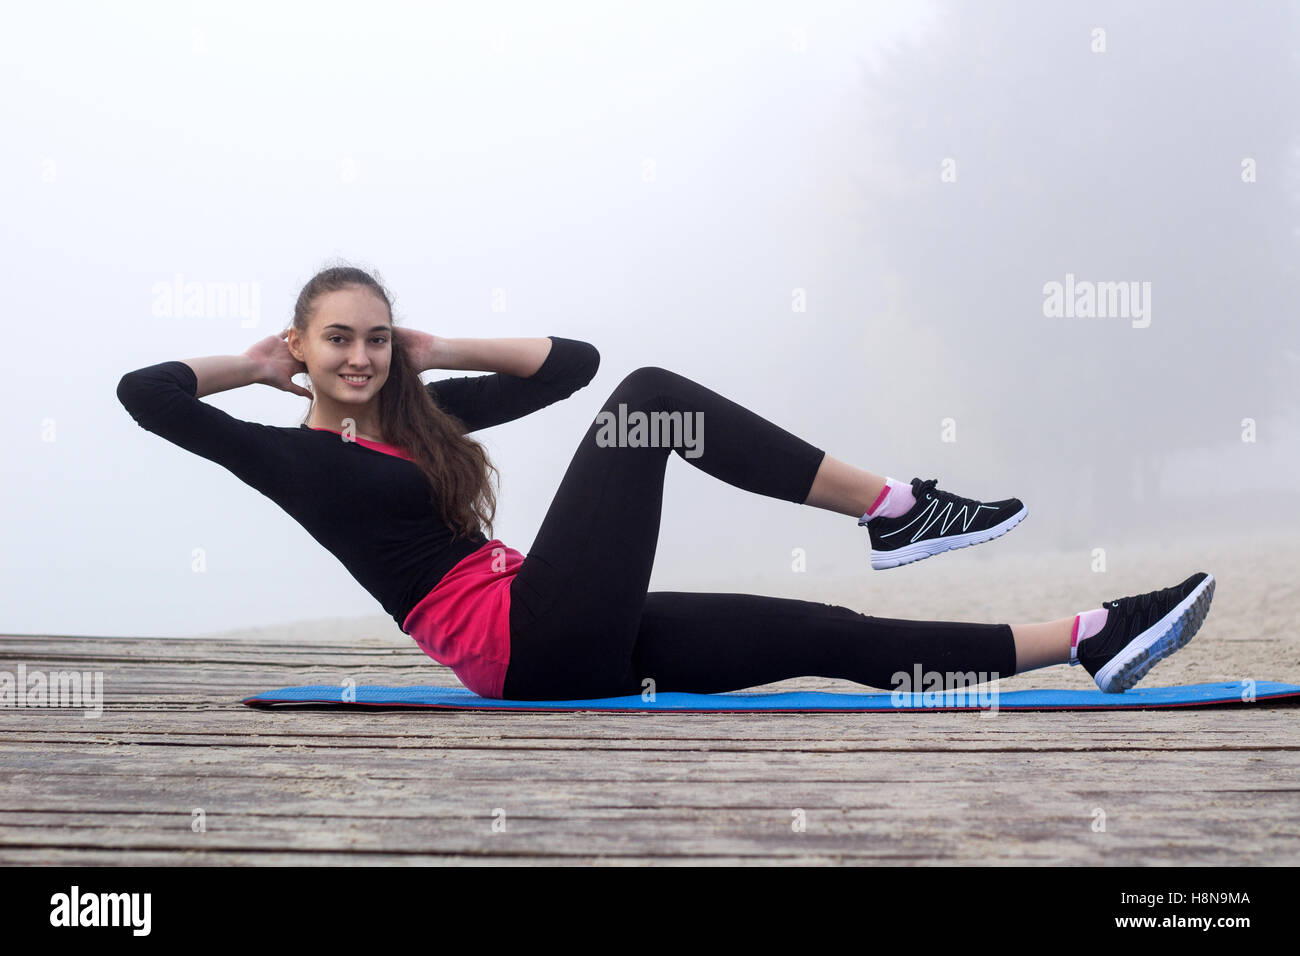 Jolie jeune femme sportive remise en forme slim n'exerce l'APA au cours de l'entraînement entraînement piscine Banque D'Images